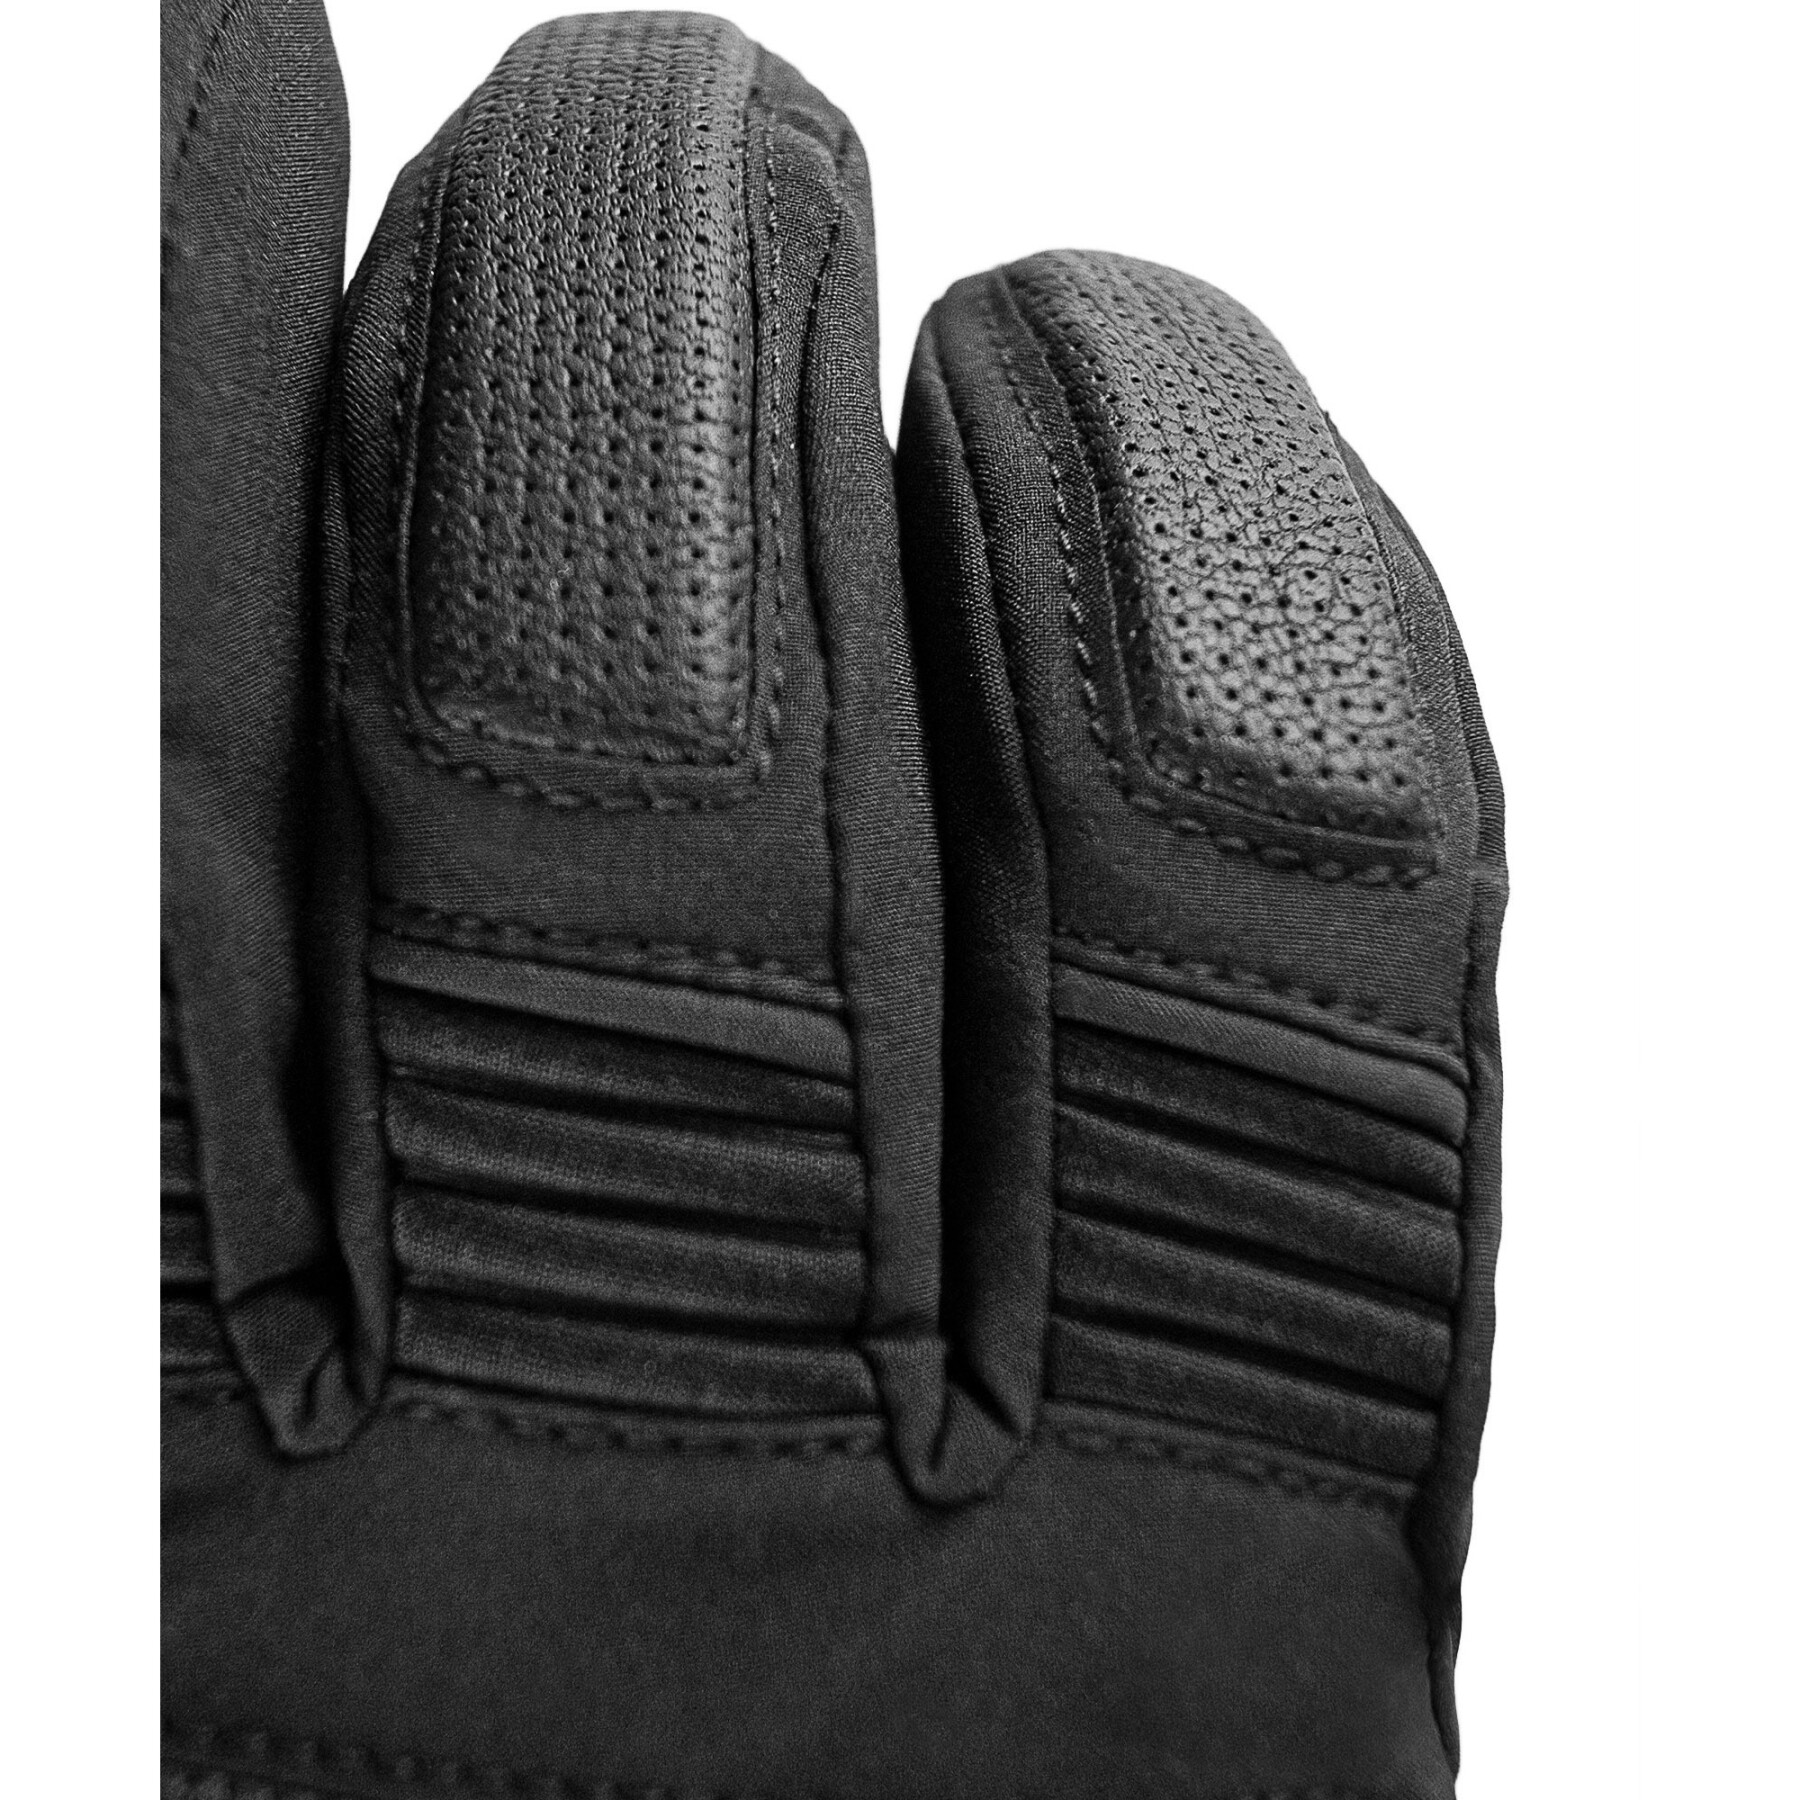 Ski gloves Reusch Storm R-TEX® XT